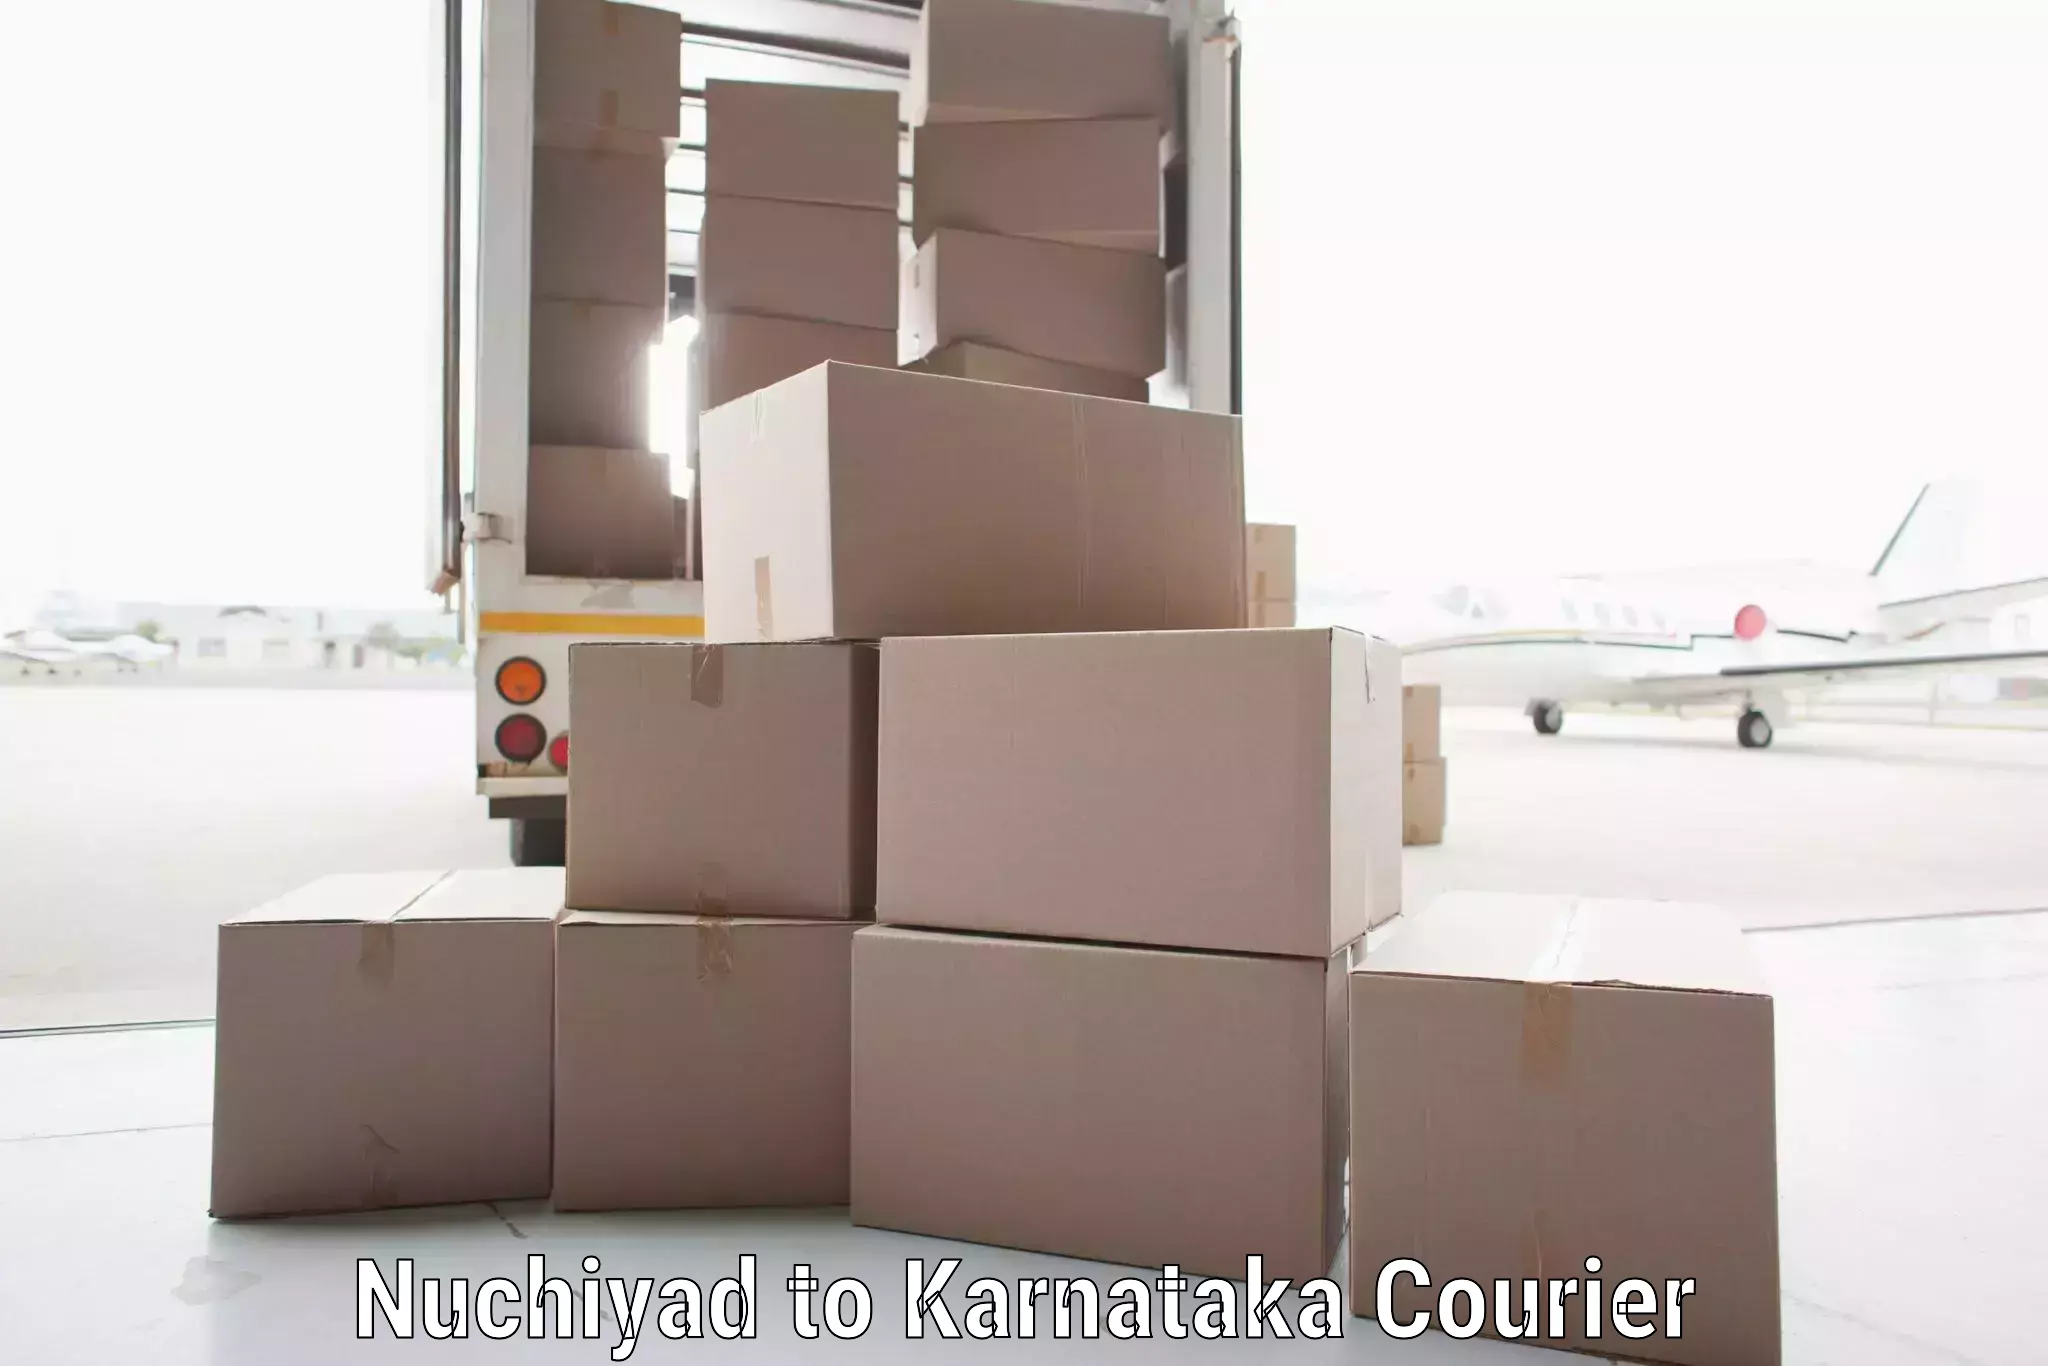 Fast shipping solutions Nuchiyad to Yelburga